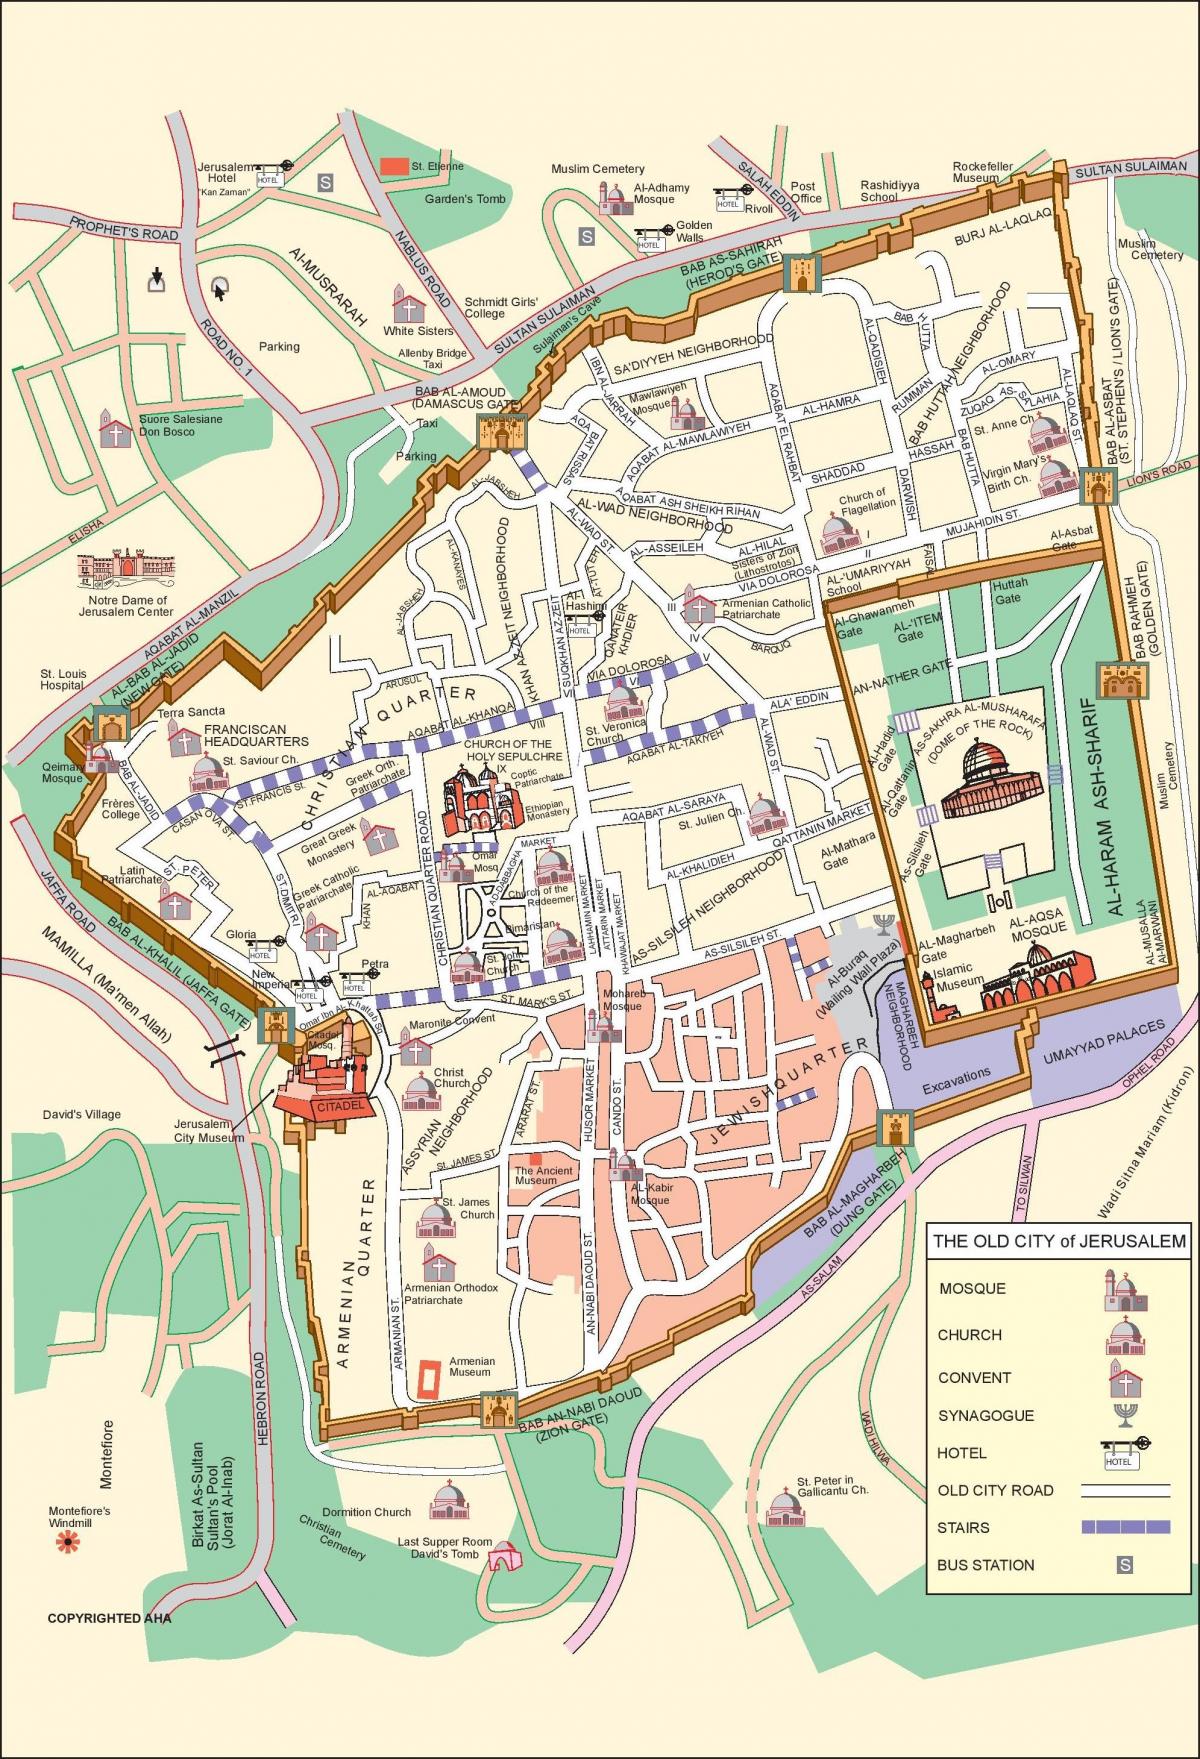 g térkép A régi város, Jeruzsálem térkép   Térkép a régi város, Jeruzsálem  g térkép